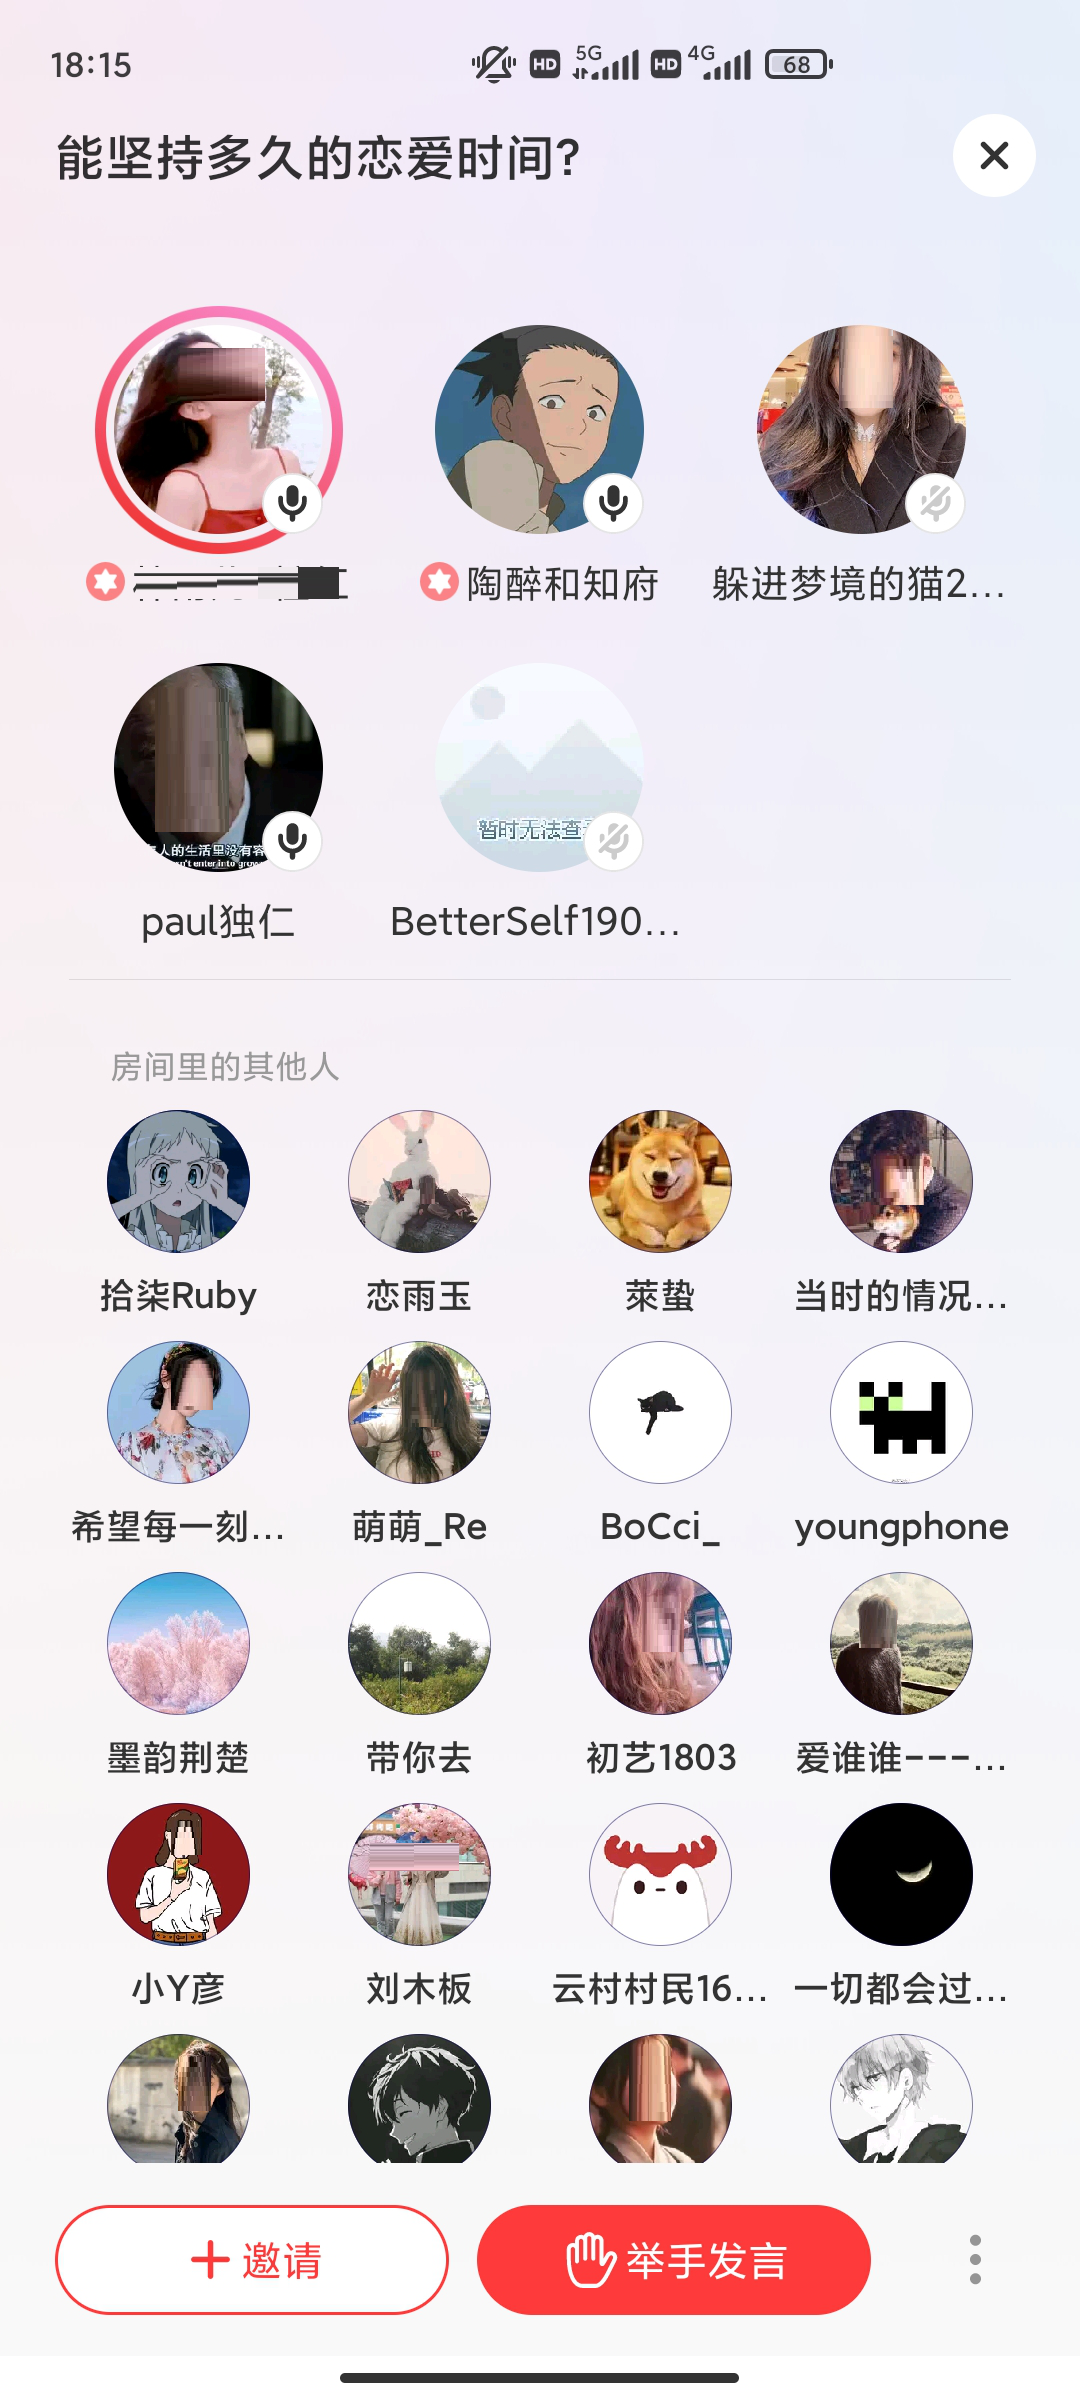 网易云音乐发布安卓8.1.31版本更新 上线音频社交功能“侃侃”截图